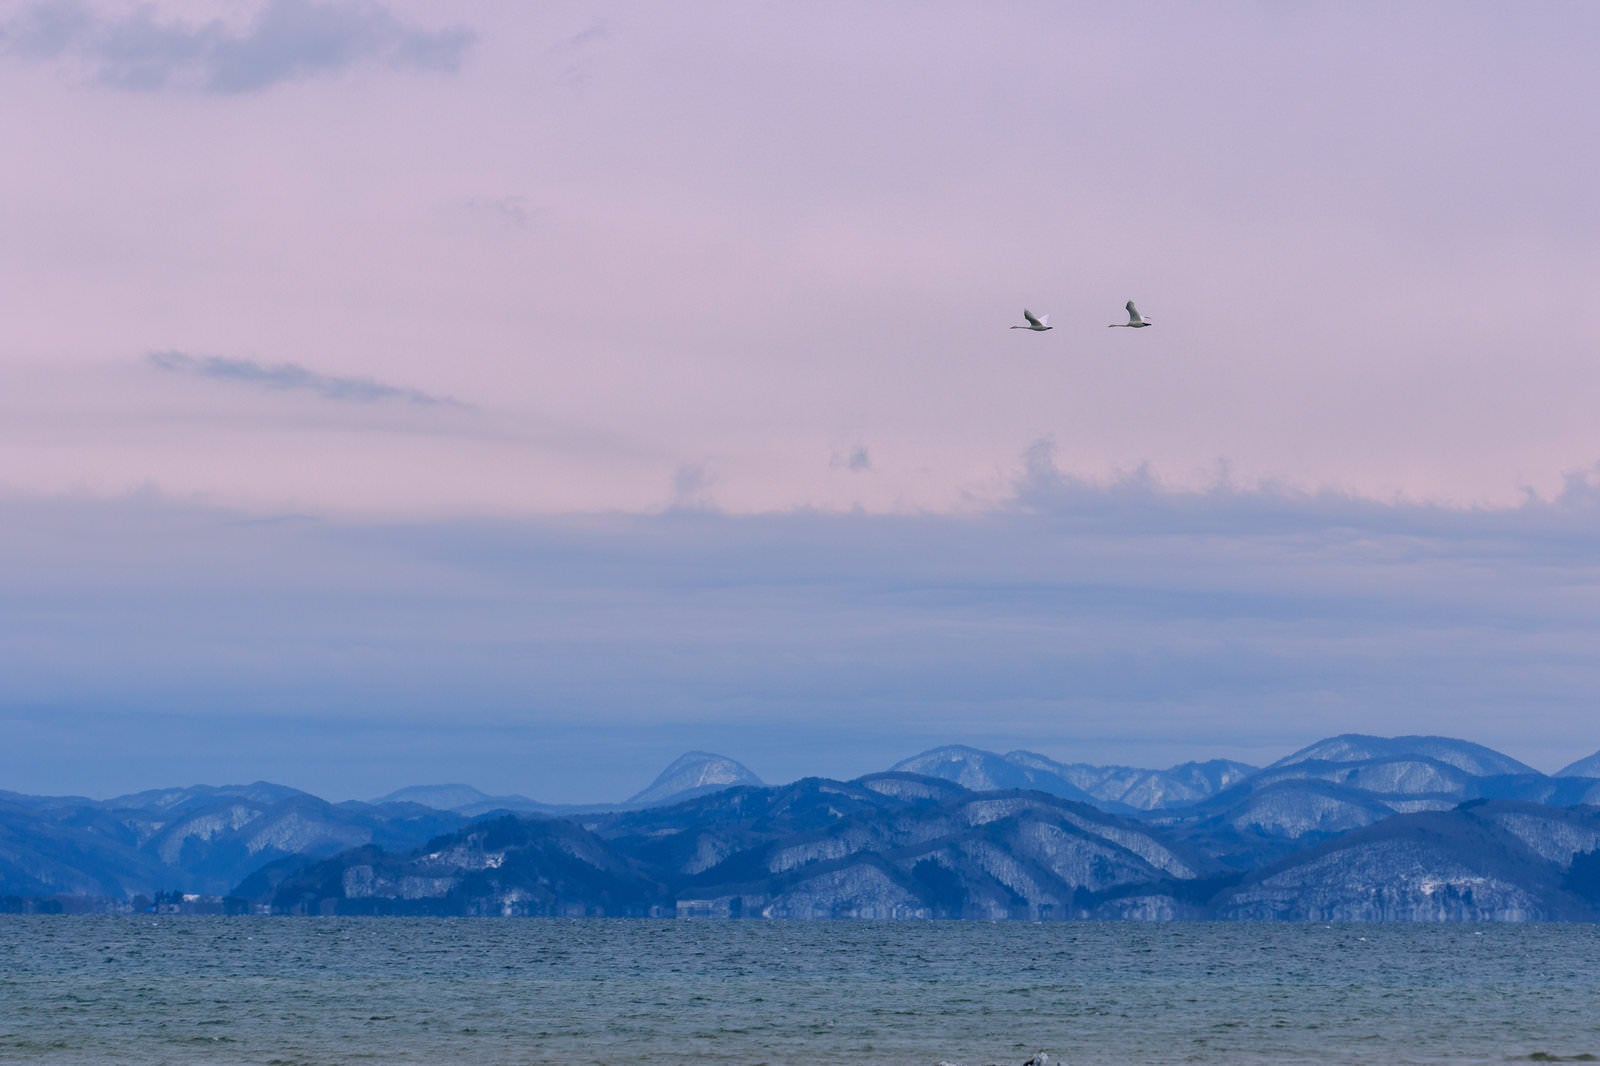 「猪苗代湖で舞う白鳥のペア」の写真